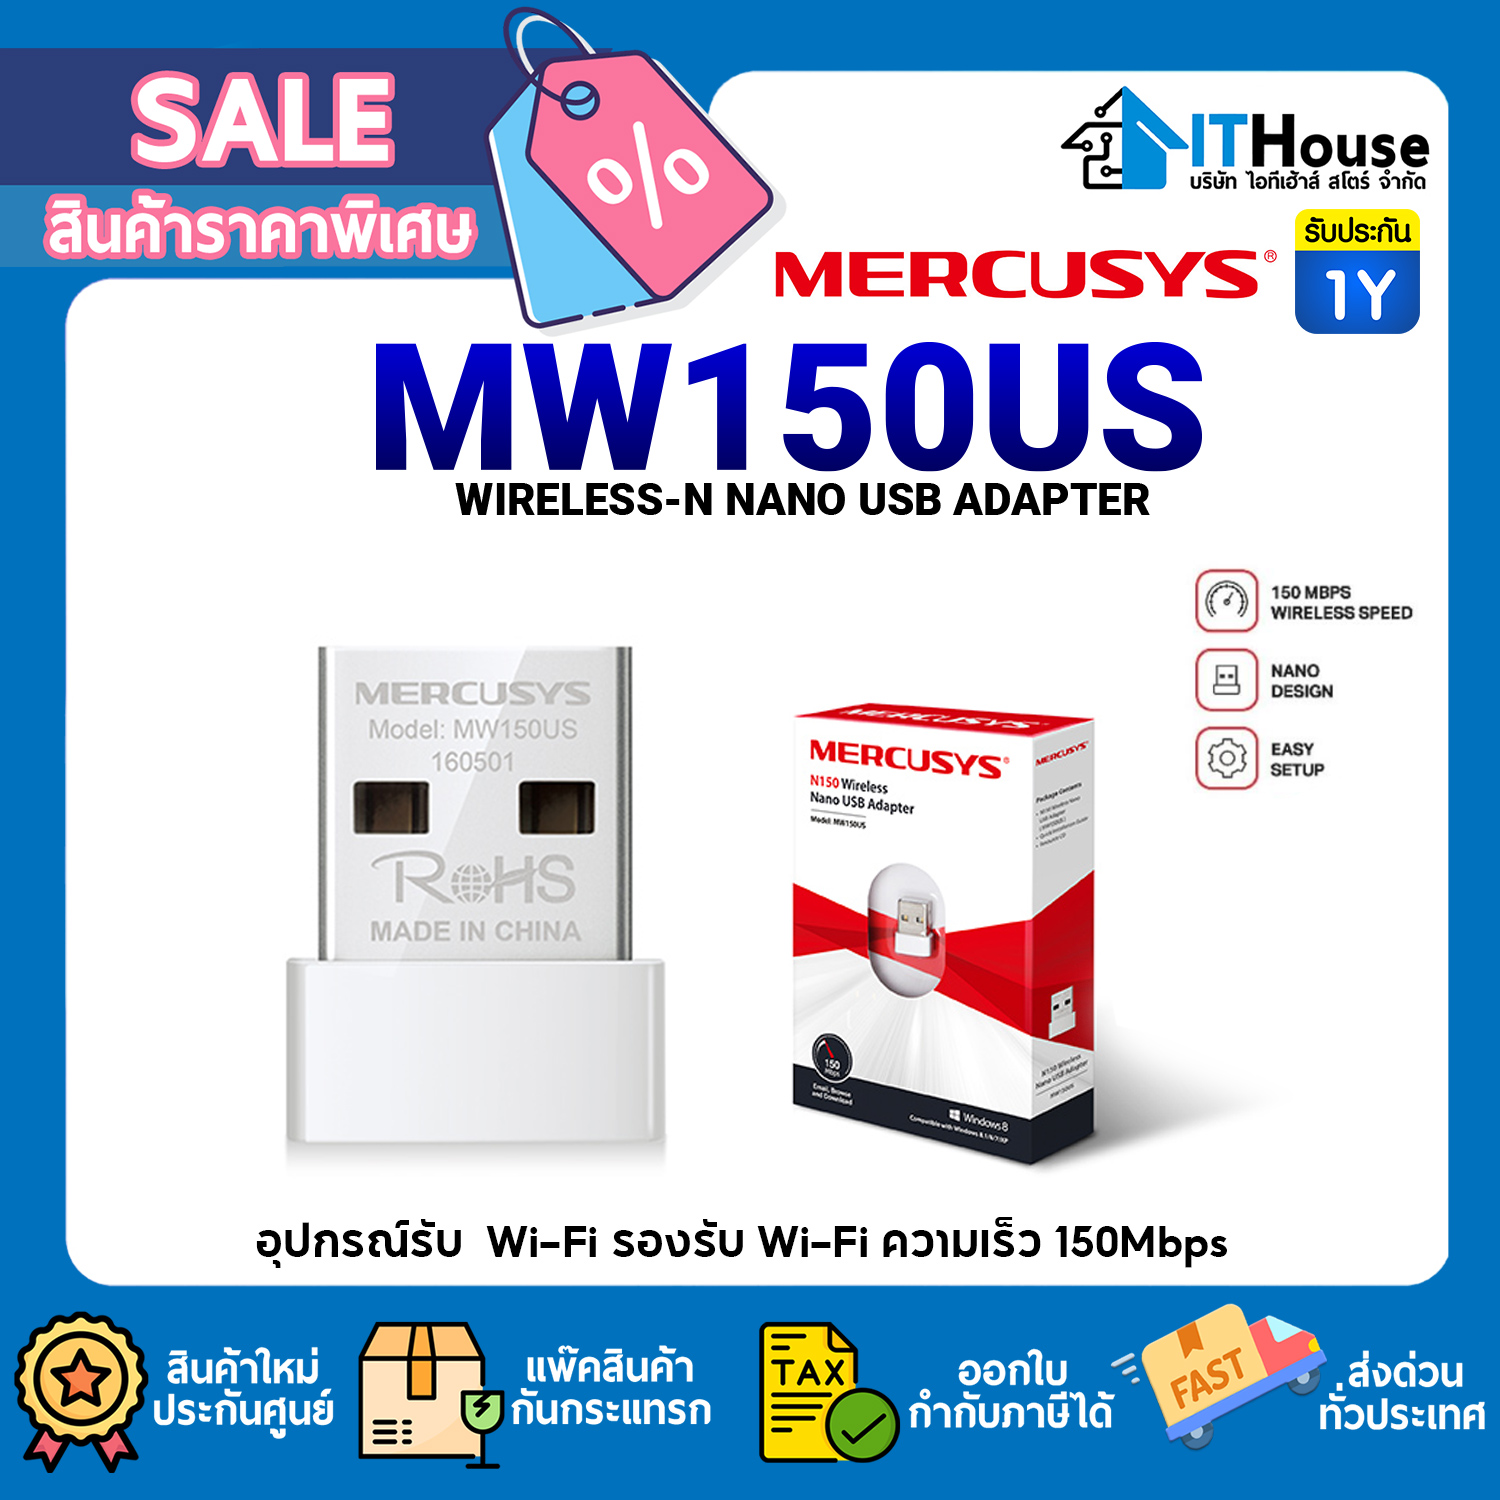 MERCUSYS MW150US 300Mbps WIRELESS N MINI USB ADAPTER